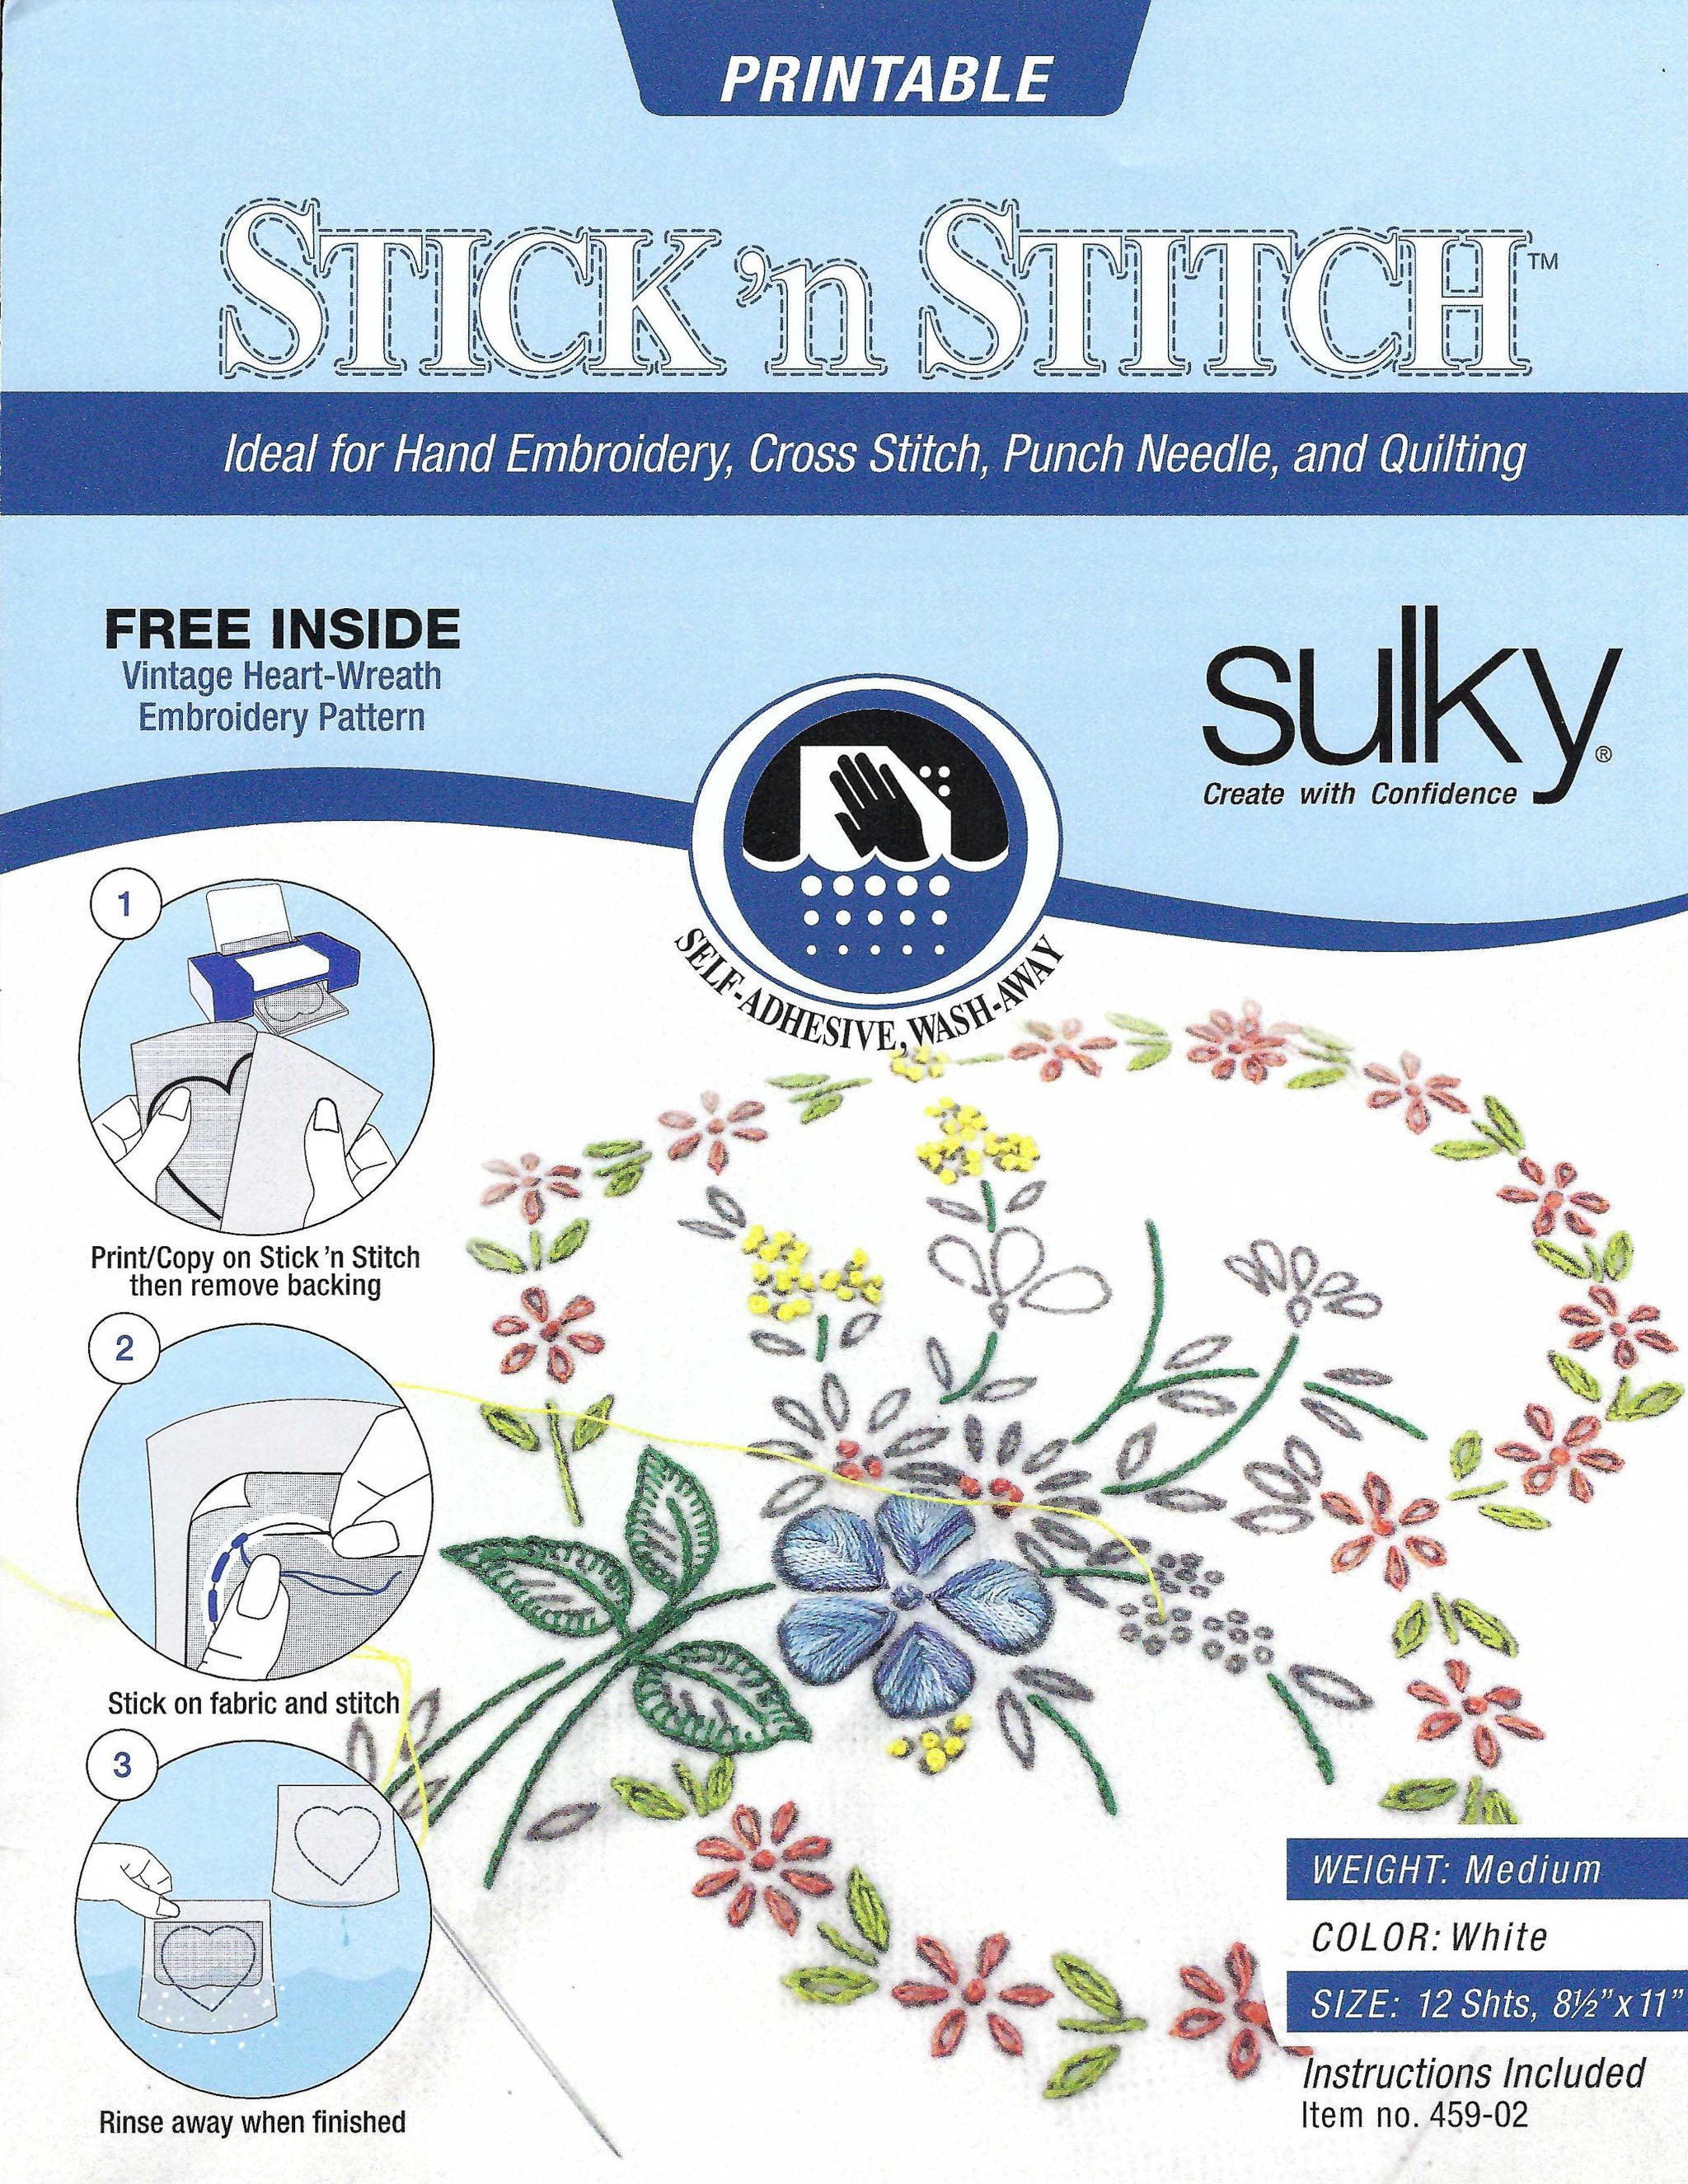 Sticky Fabri Solvy help?? : r/Embroidery